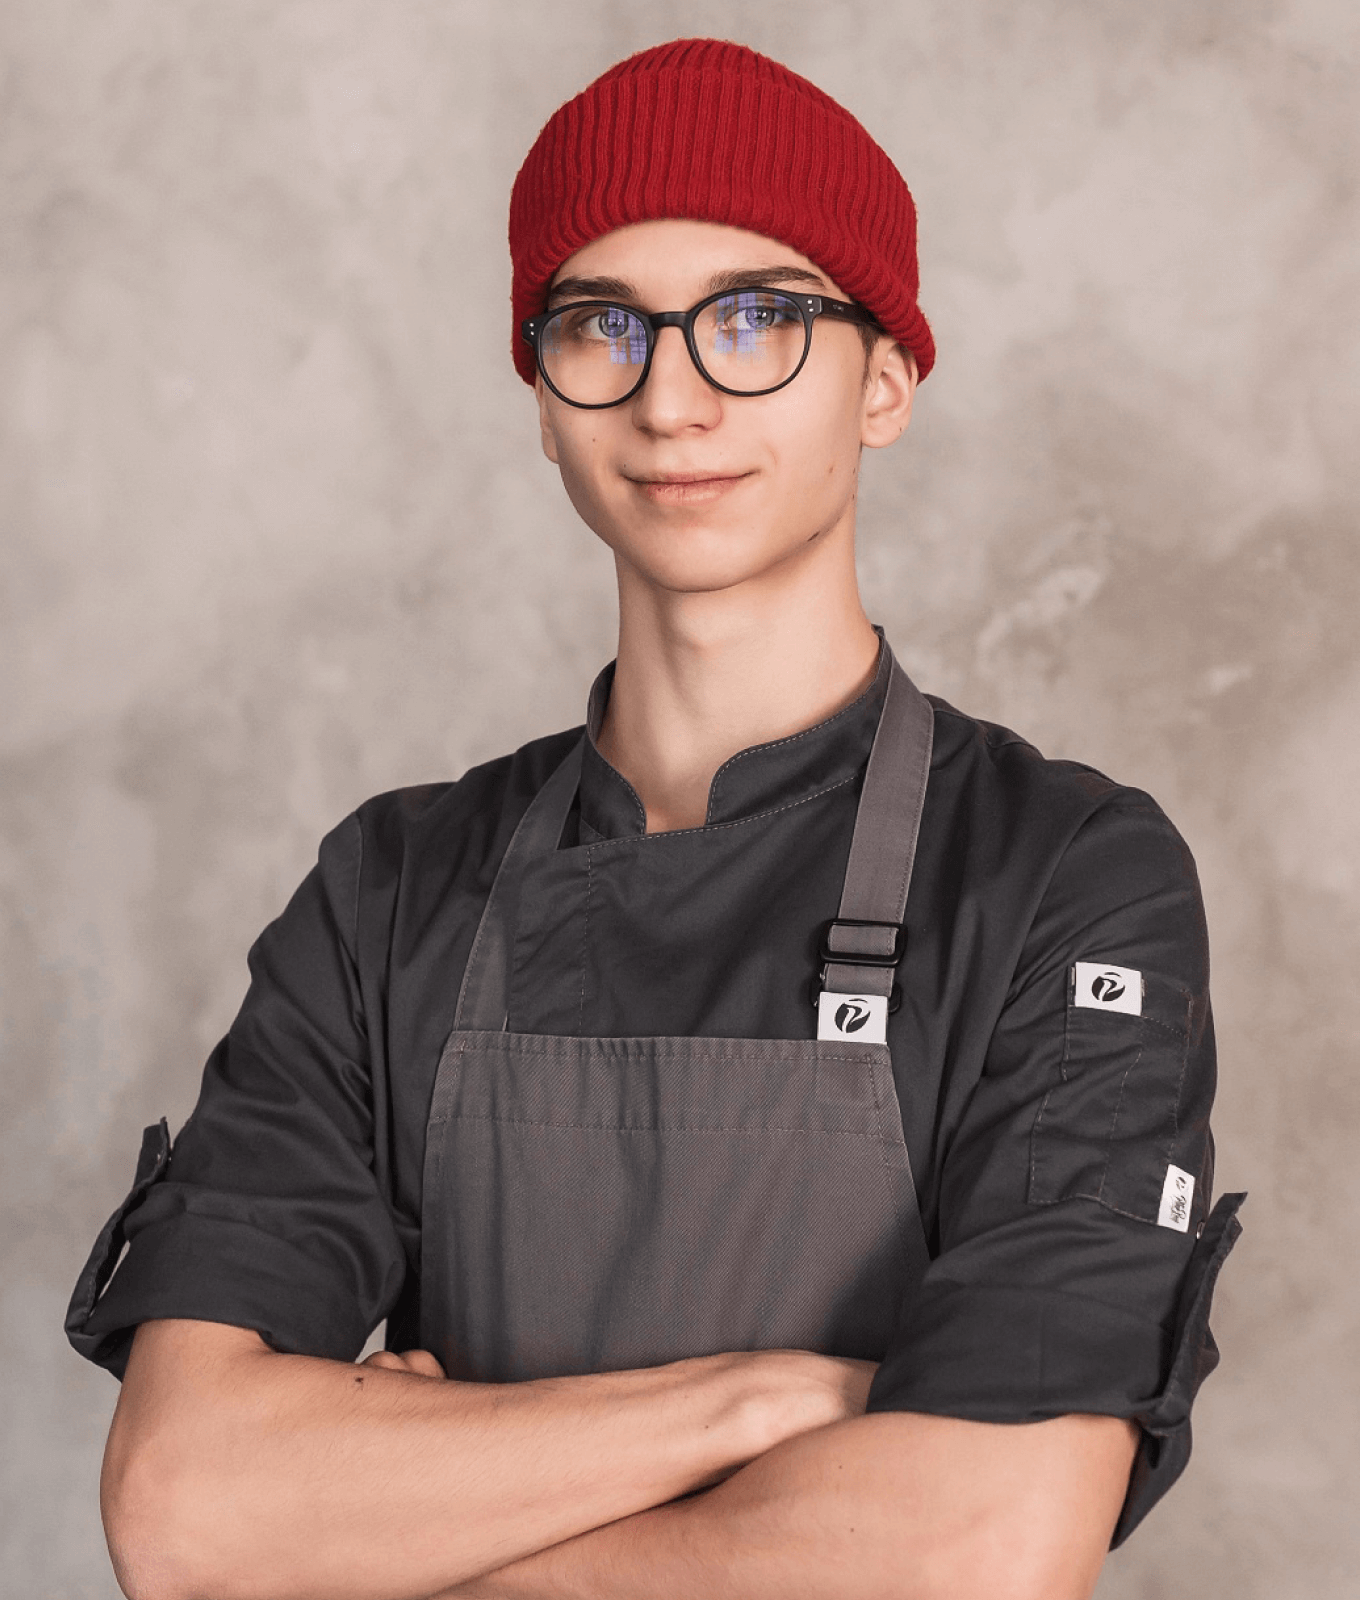 Петр Куликов печет торты на заказ с 14 лет